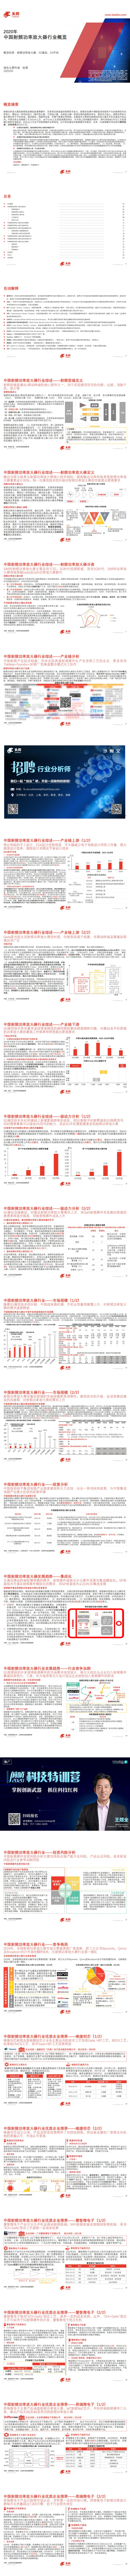 【头豹】2020年中国射频功率放大器行业概览_0.jpg